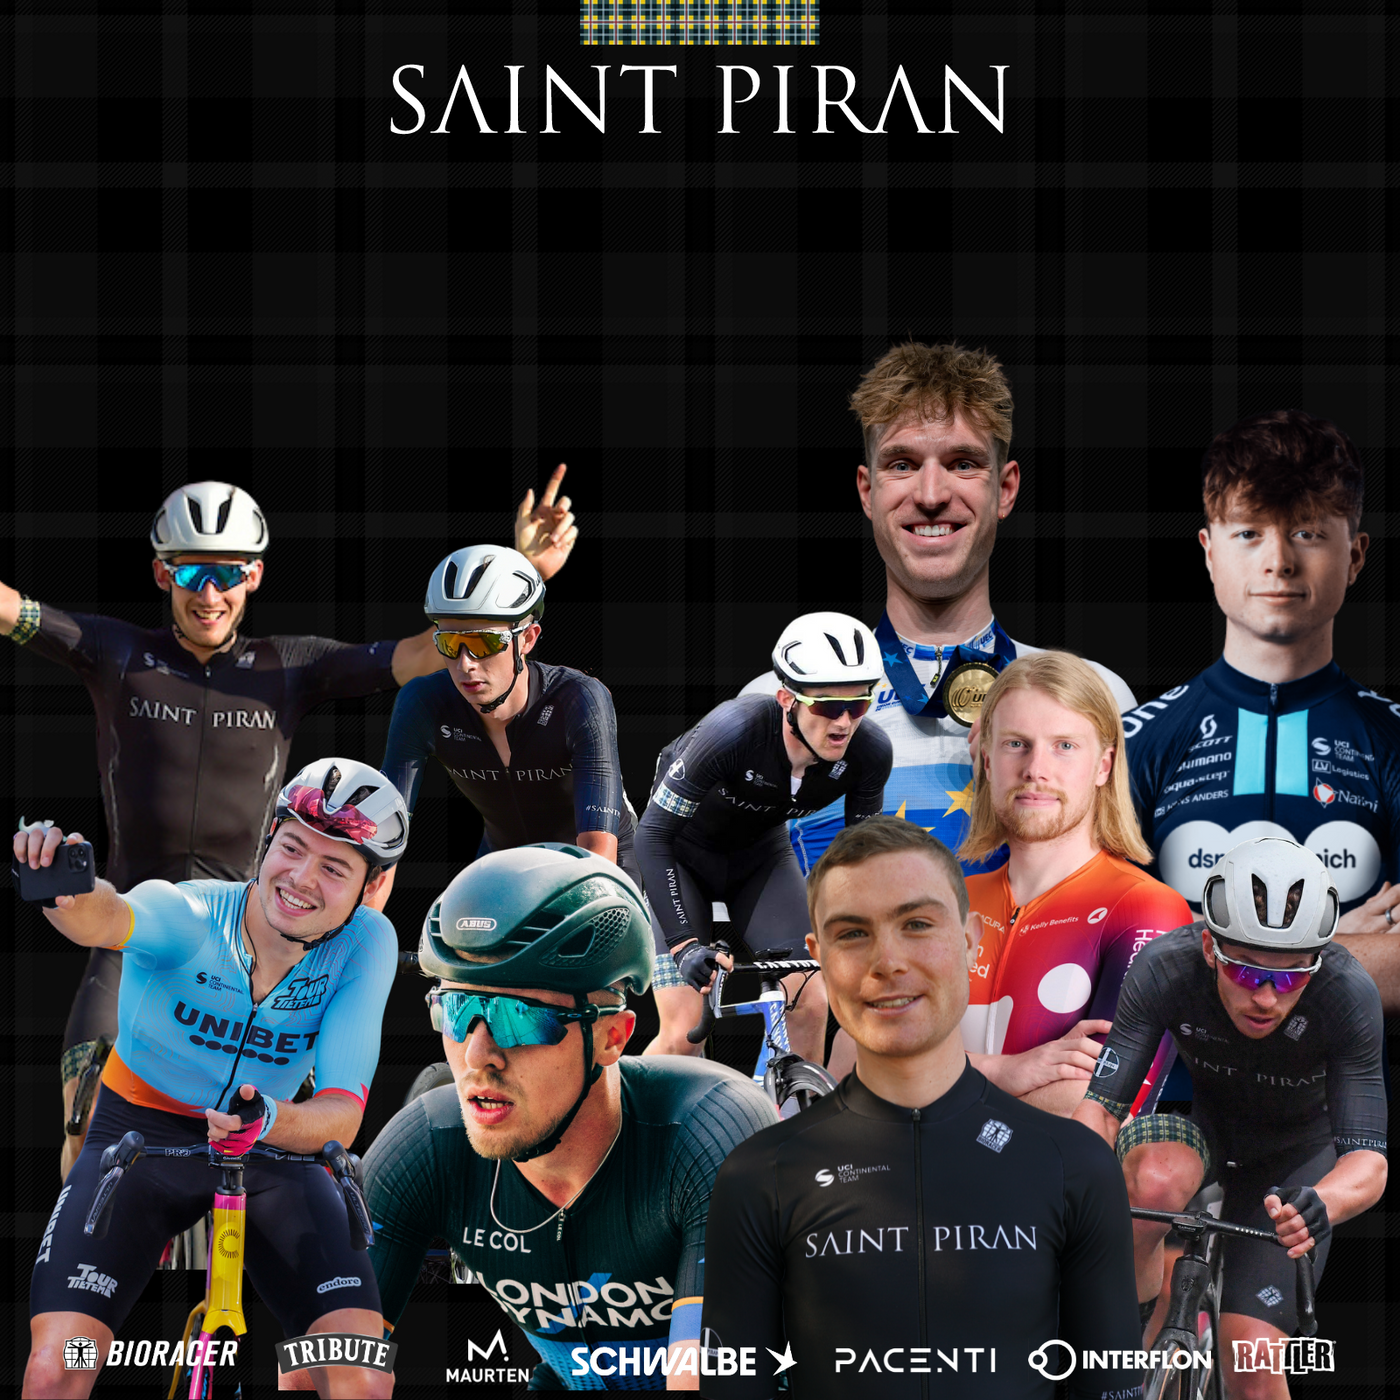 Dear Saint Piran Pro Cycling Fans